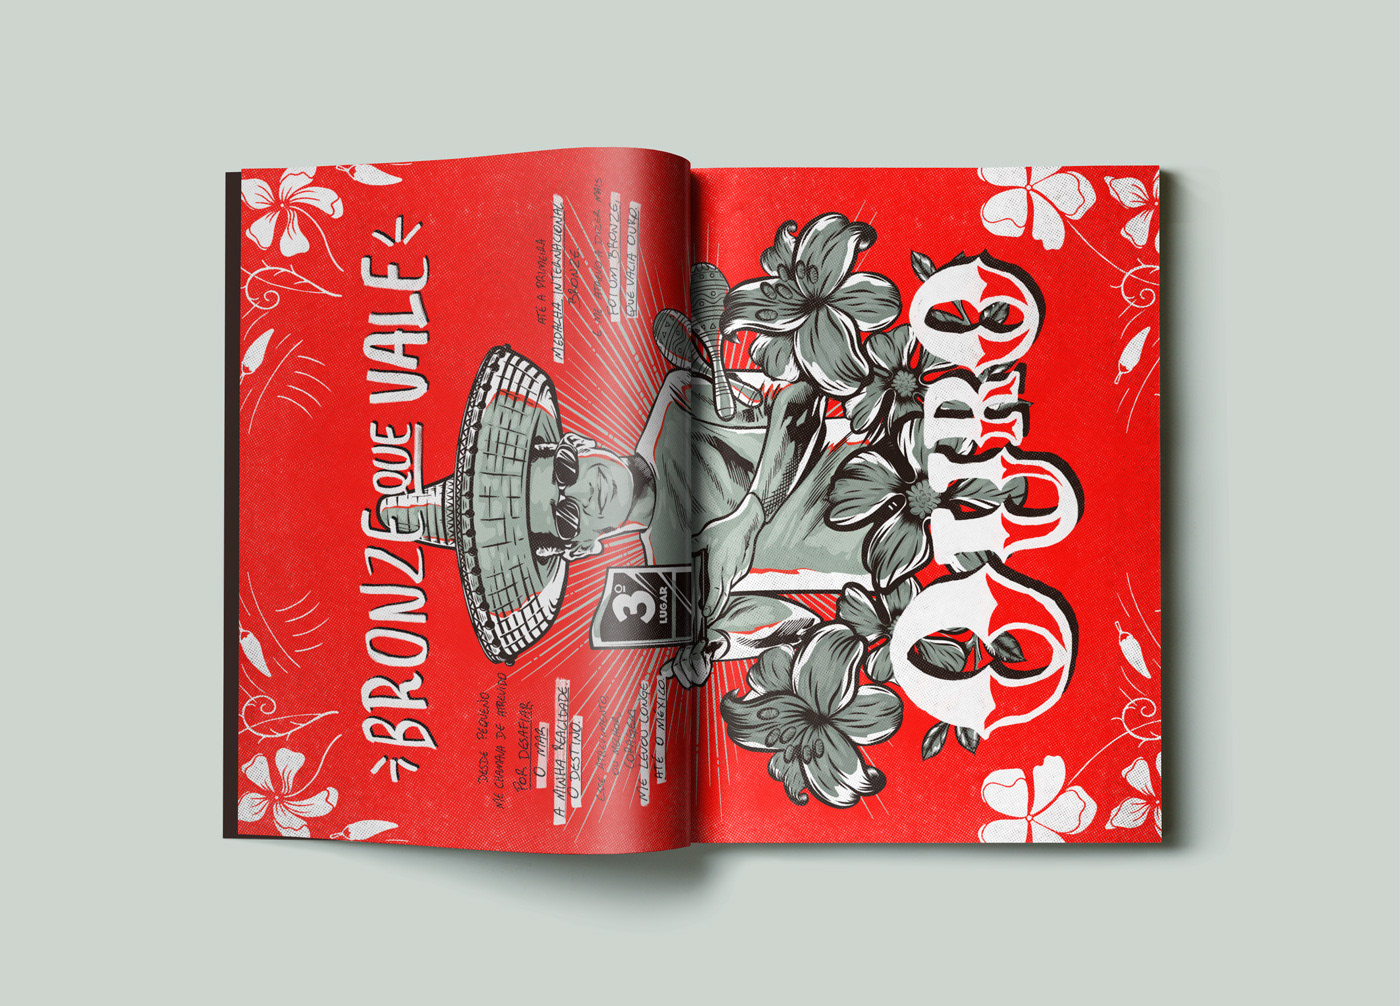 Surf design gráfico art book comics Bridgestone sports Advertising  designer graphic italo Ferreira